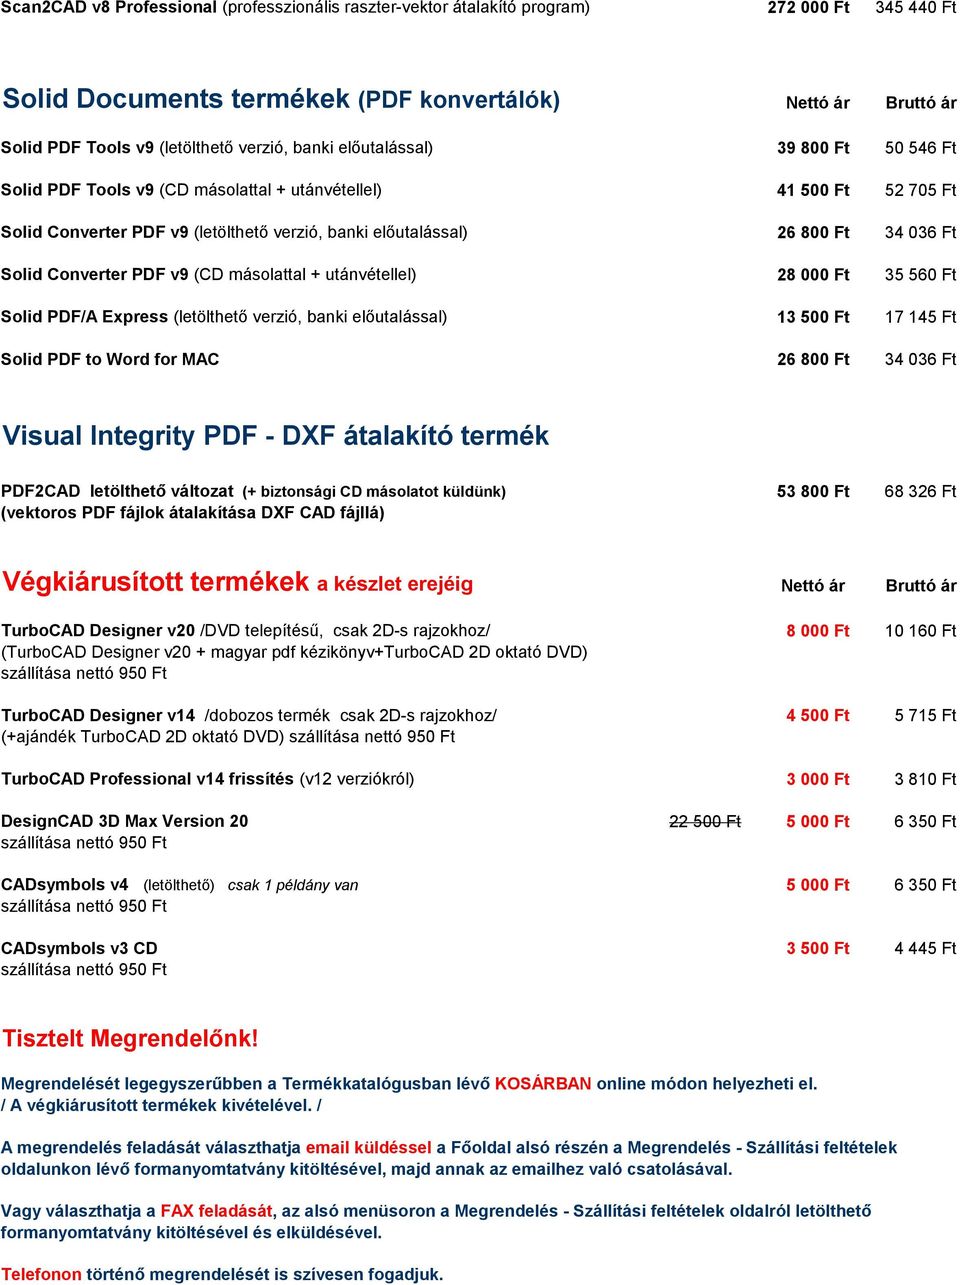 Converter PDF v9 (CD másolattal + utánvétellel) 28 000 Ft 35 560 Ft Solid PDF/A Express (letölthető verzió, banki előutalással) 13 500 Ft 17 145 Ft Solid PDF to Word for MAC 26 800 Ft 34 036 Ft